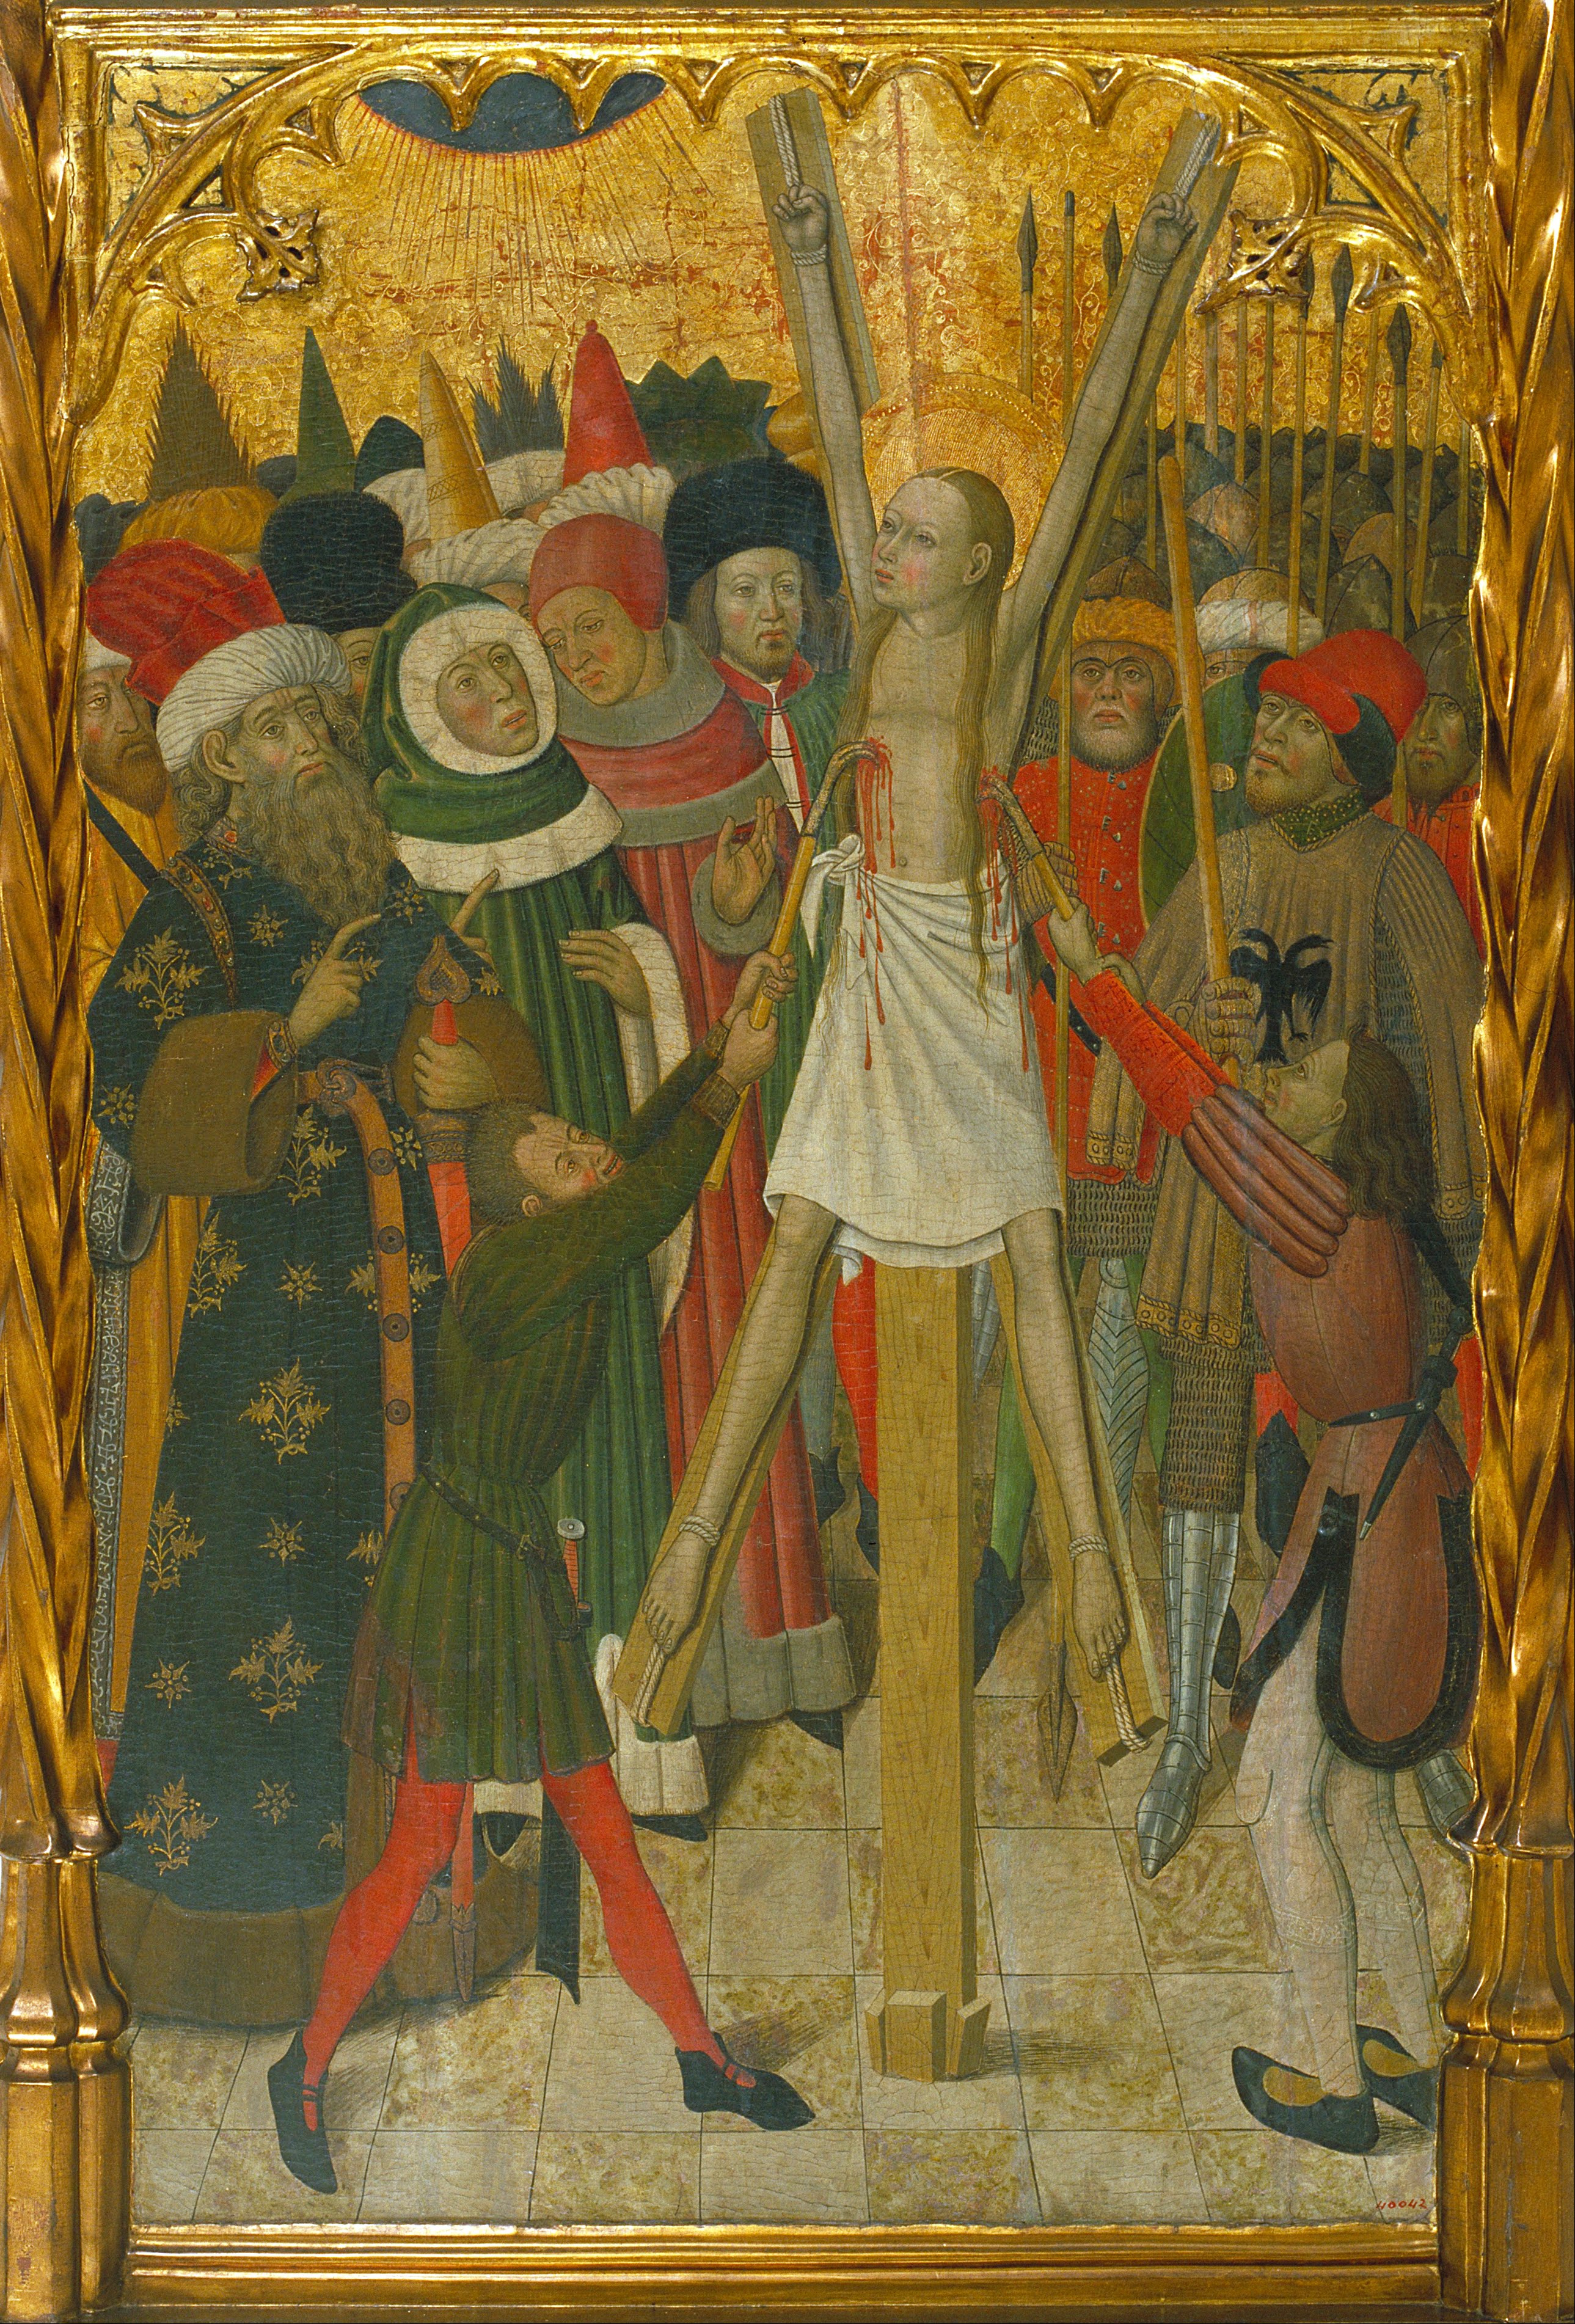 Bernat Martorell - 15e eeuw - 1452